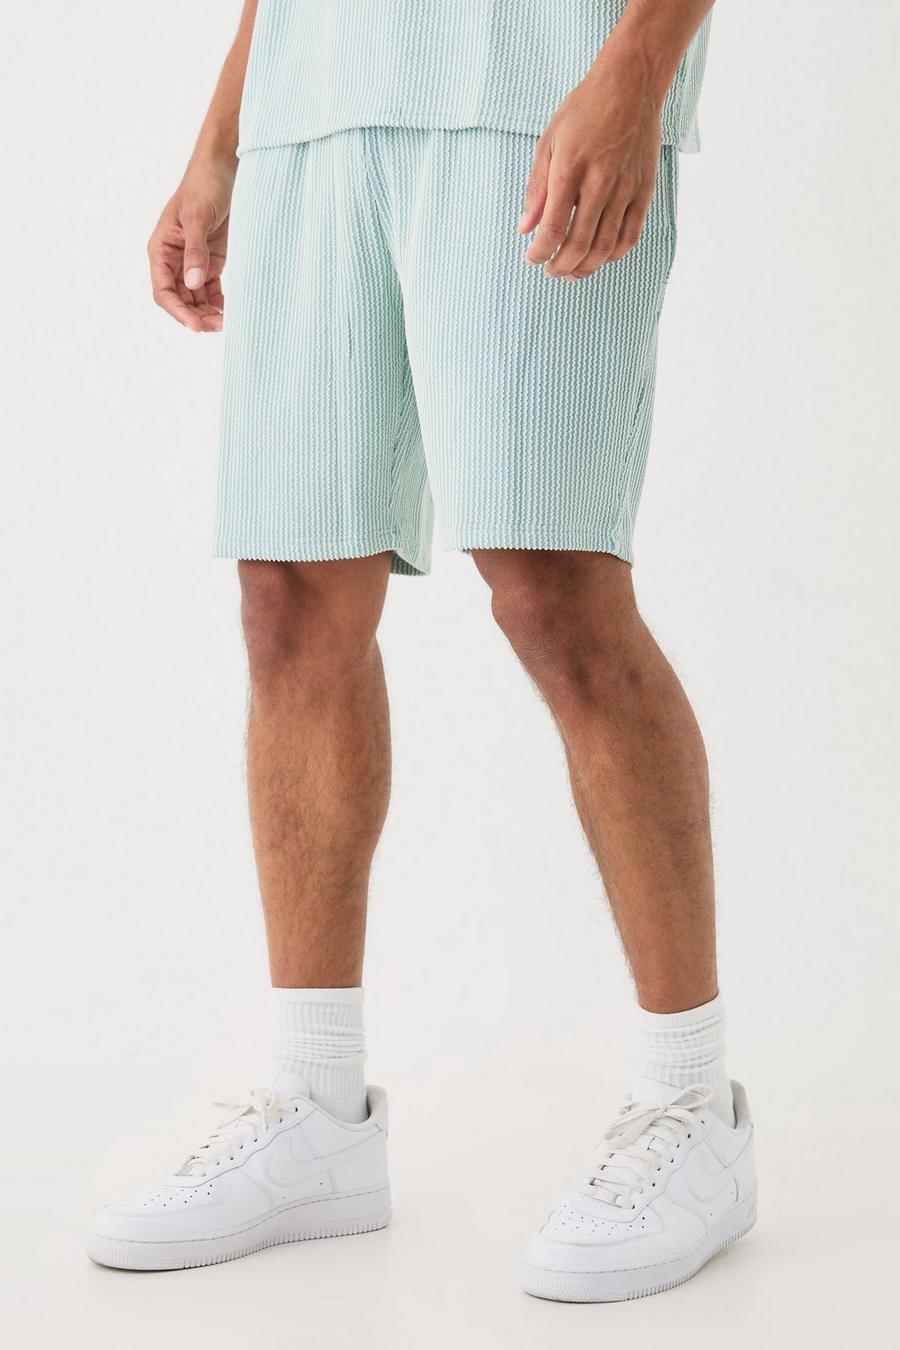 Pantalón corto holgado de largo medio texturizado con rayas, Dusty blue